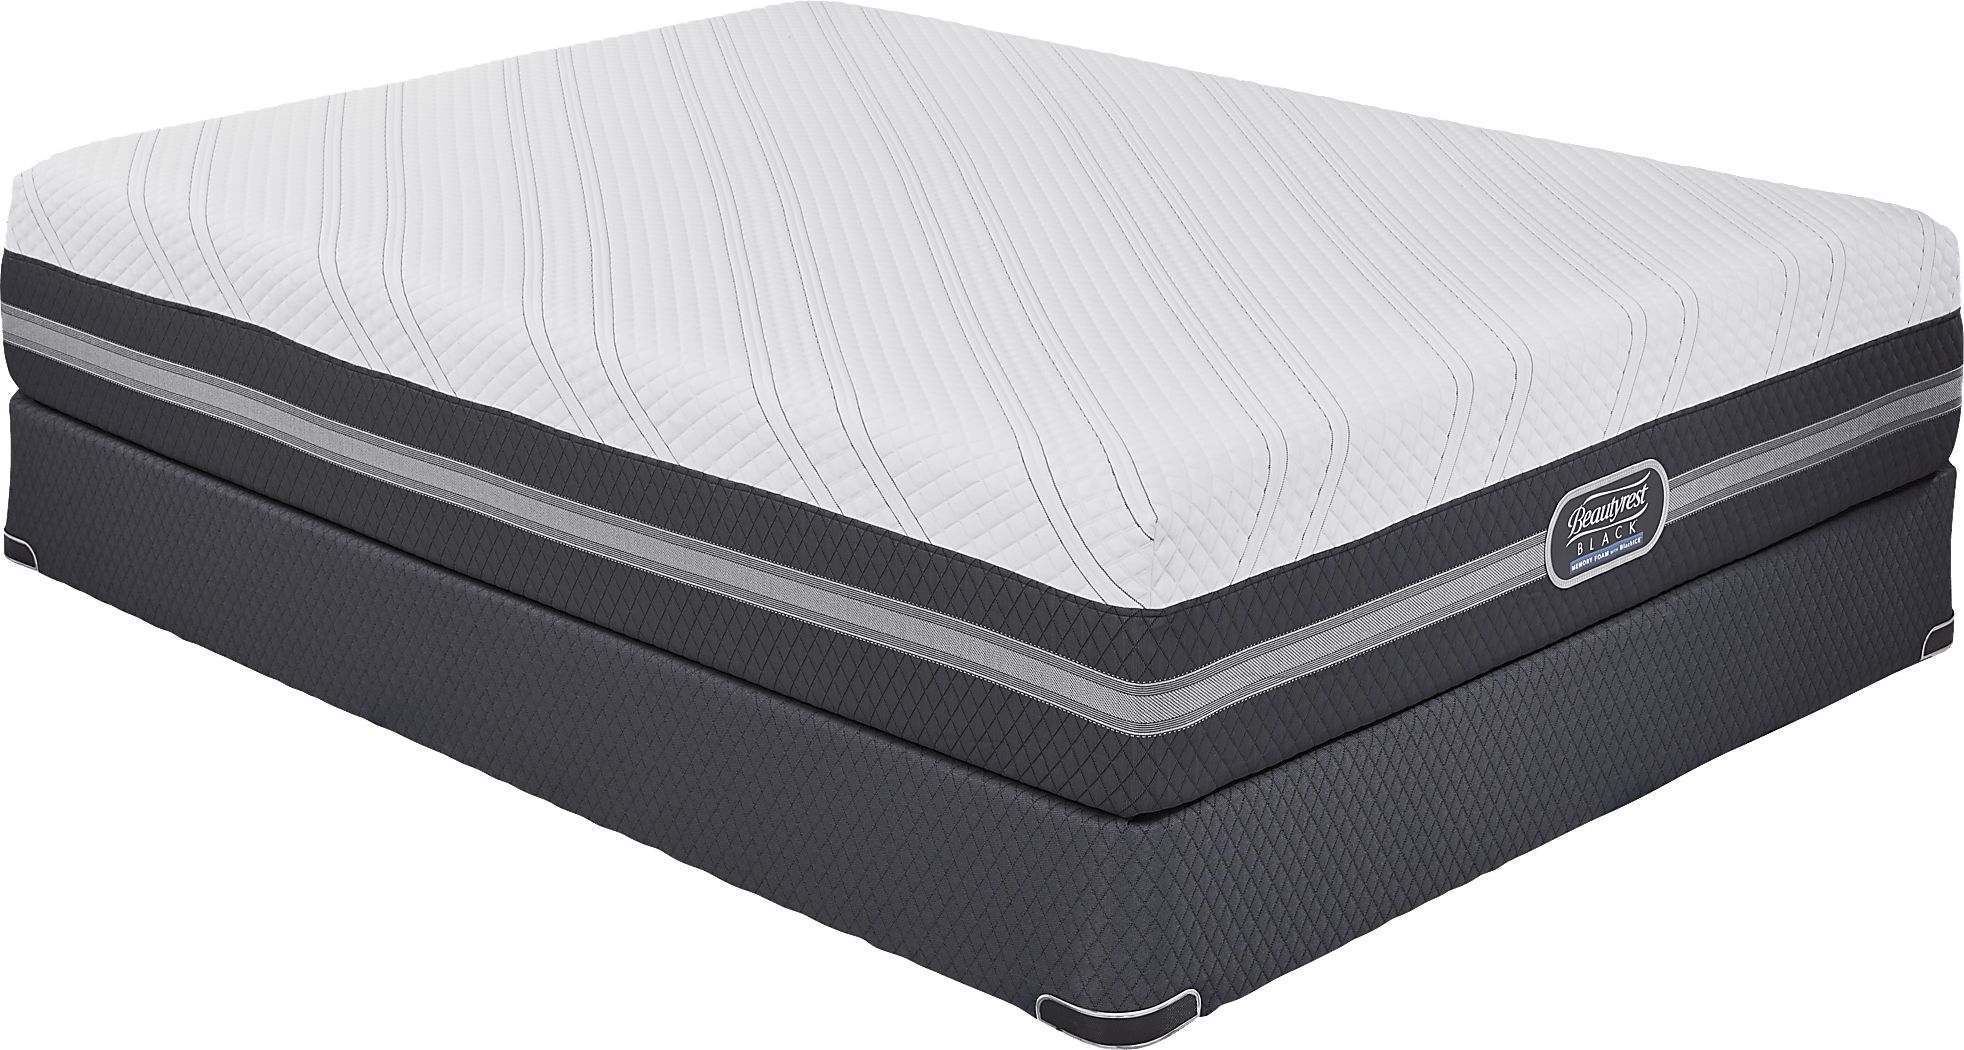 roxanne plush mattress king prime reviews